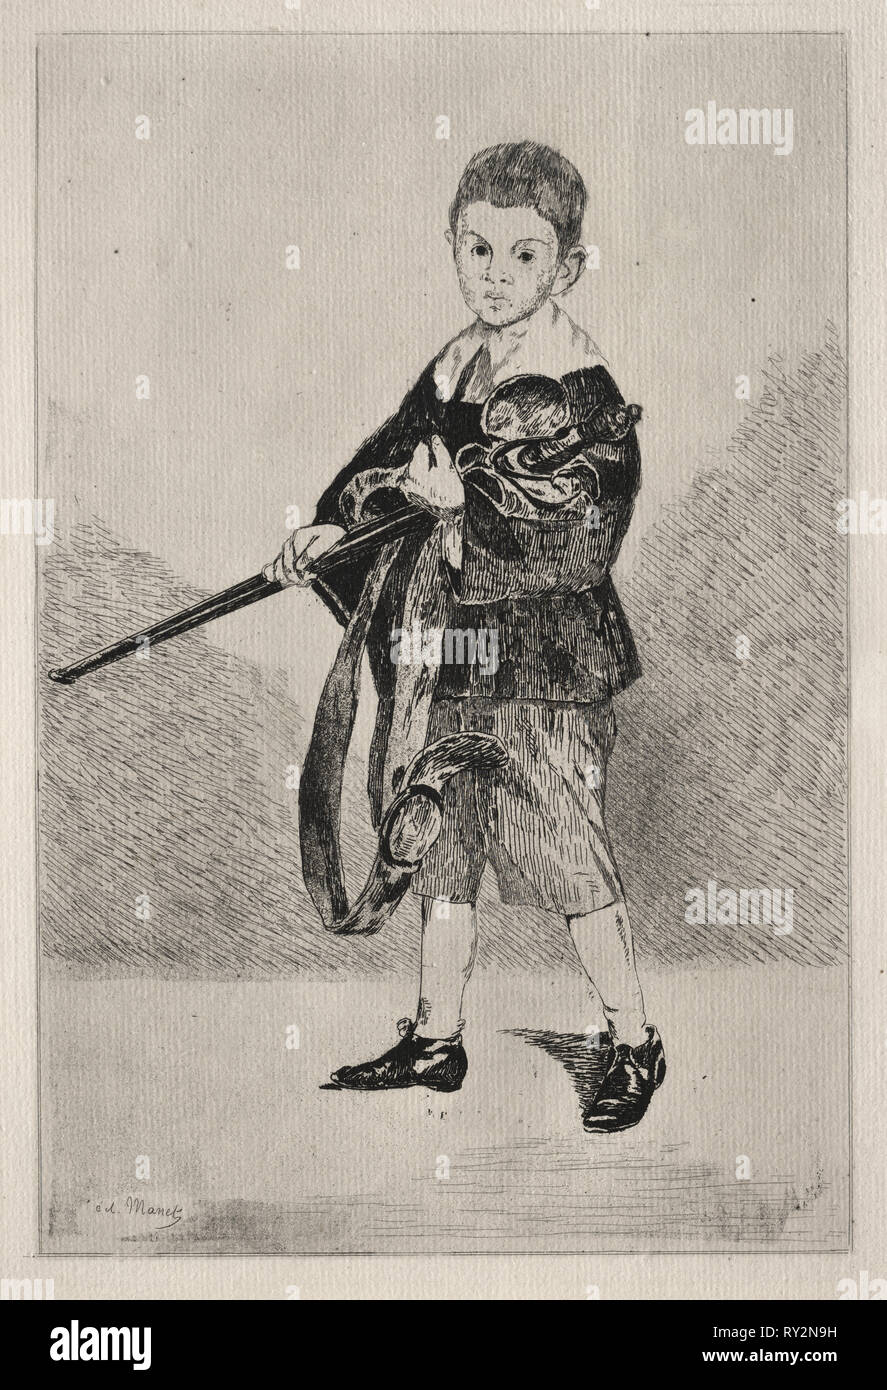 Bambino con la spada, ruotato verso sinistra. Edouard Manet (Francese, 1832-1883). Attacco Foto Stock